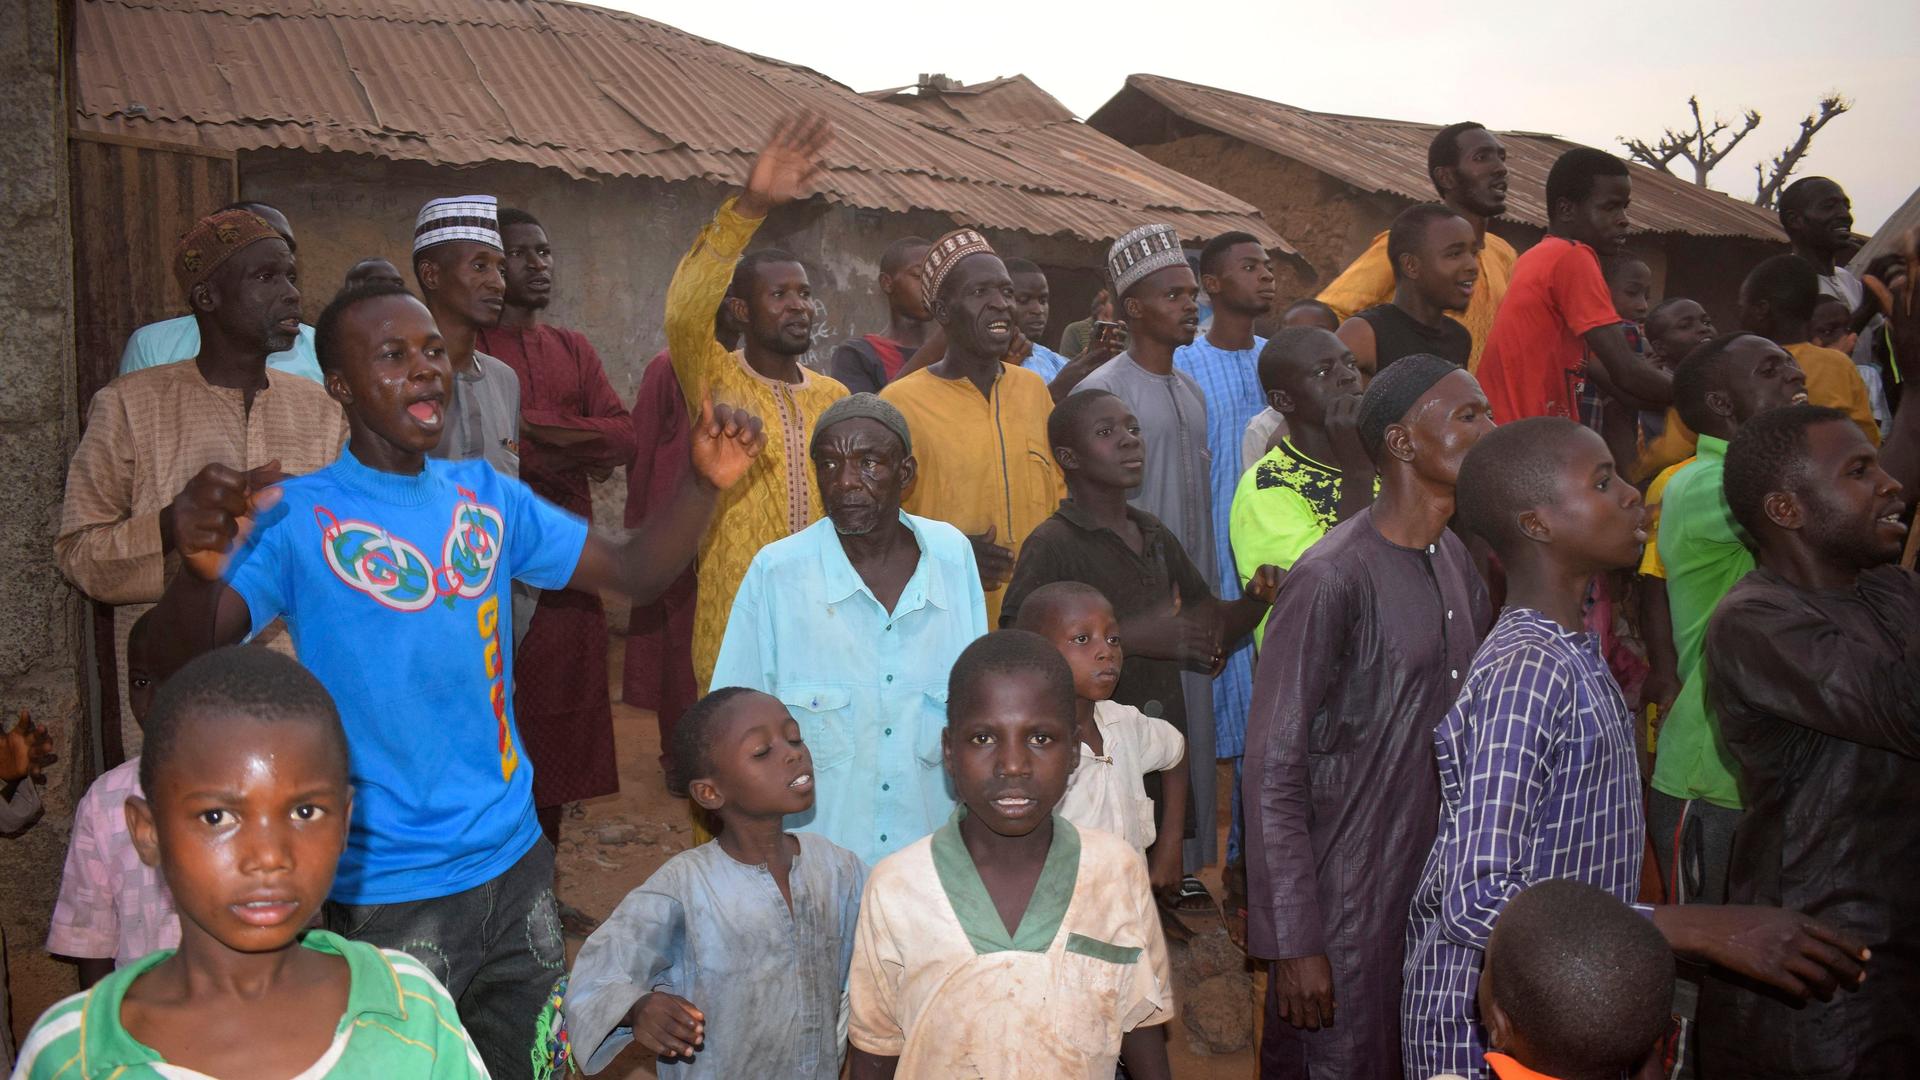 Männer und Kinder rufen etwas in Richtung der nationalen Sicherheitskräfte, die nach der Entführung von Schulkindern in der Region Kaduna eingetroffen sind.